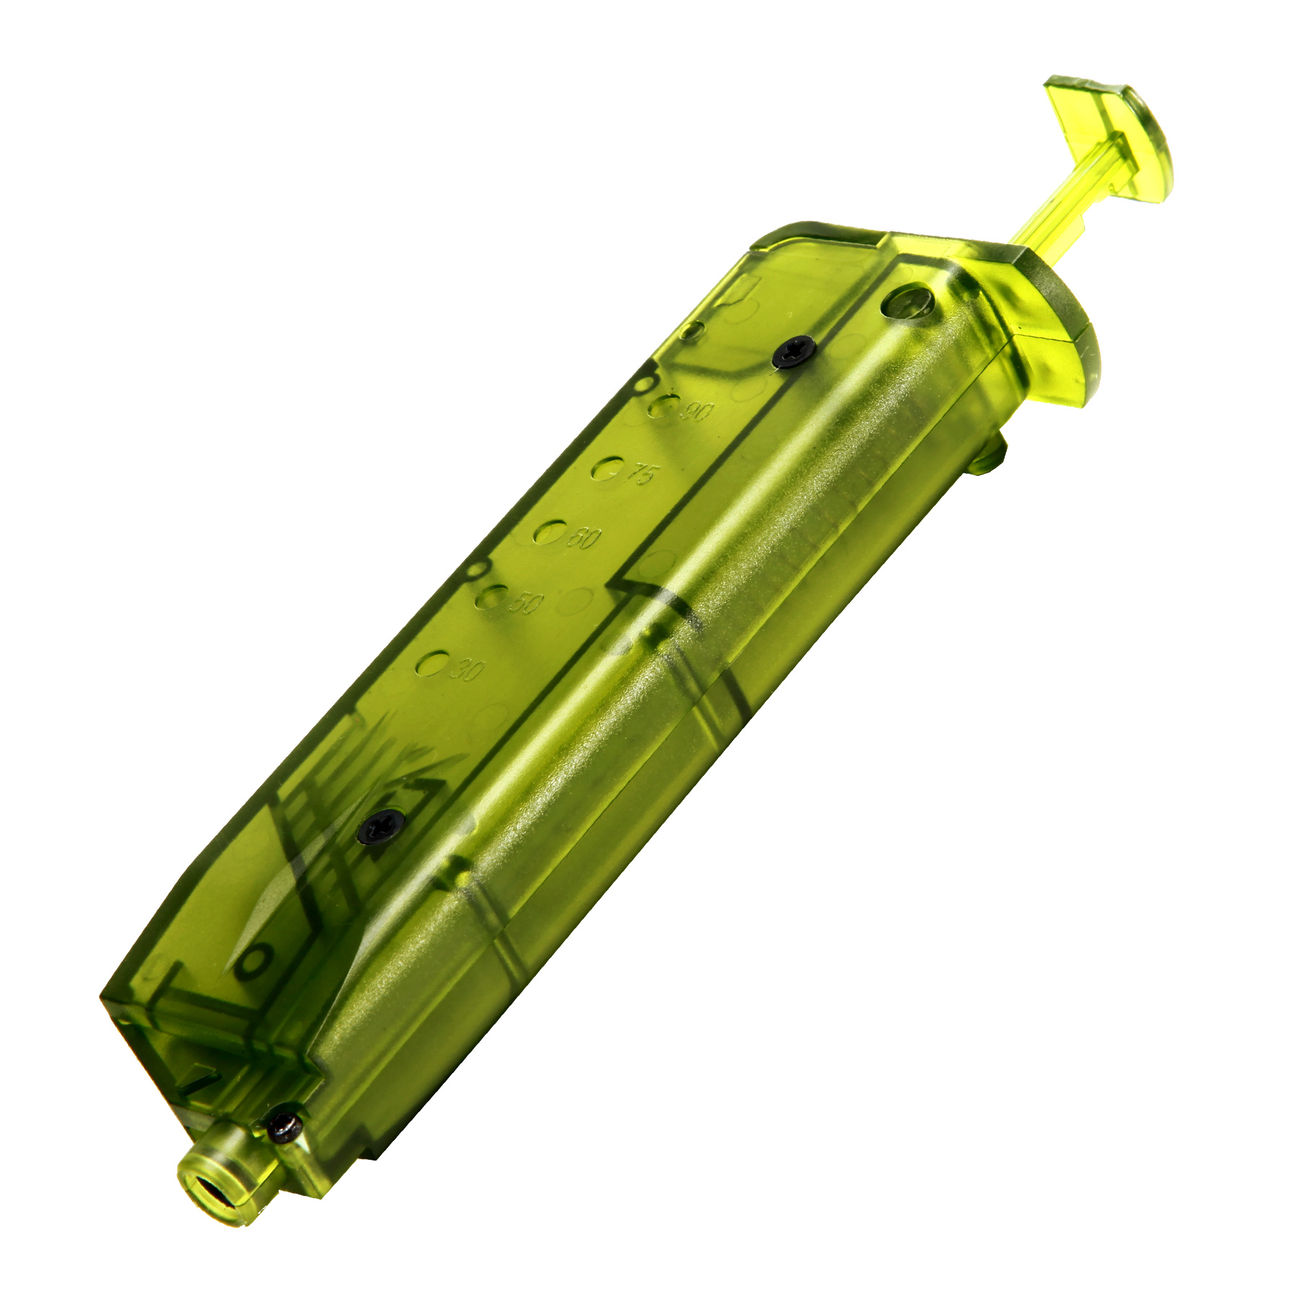 BAAL Pistol-Type Speedloader für 150 BBs grün-transparent Bild 1